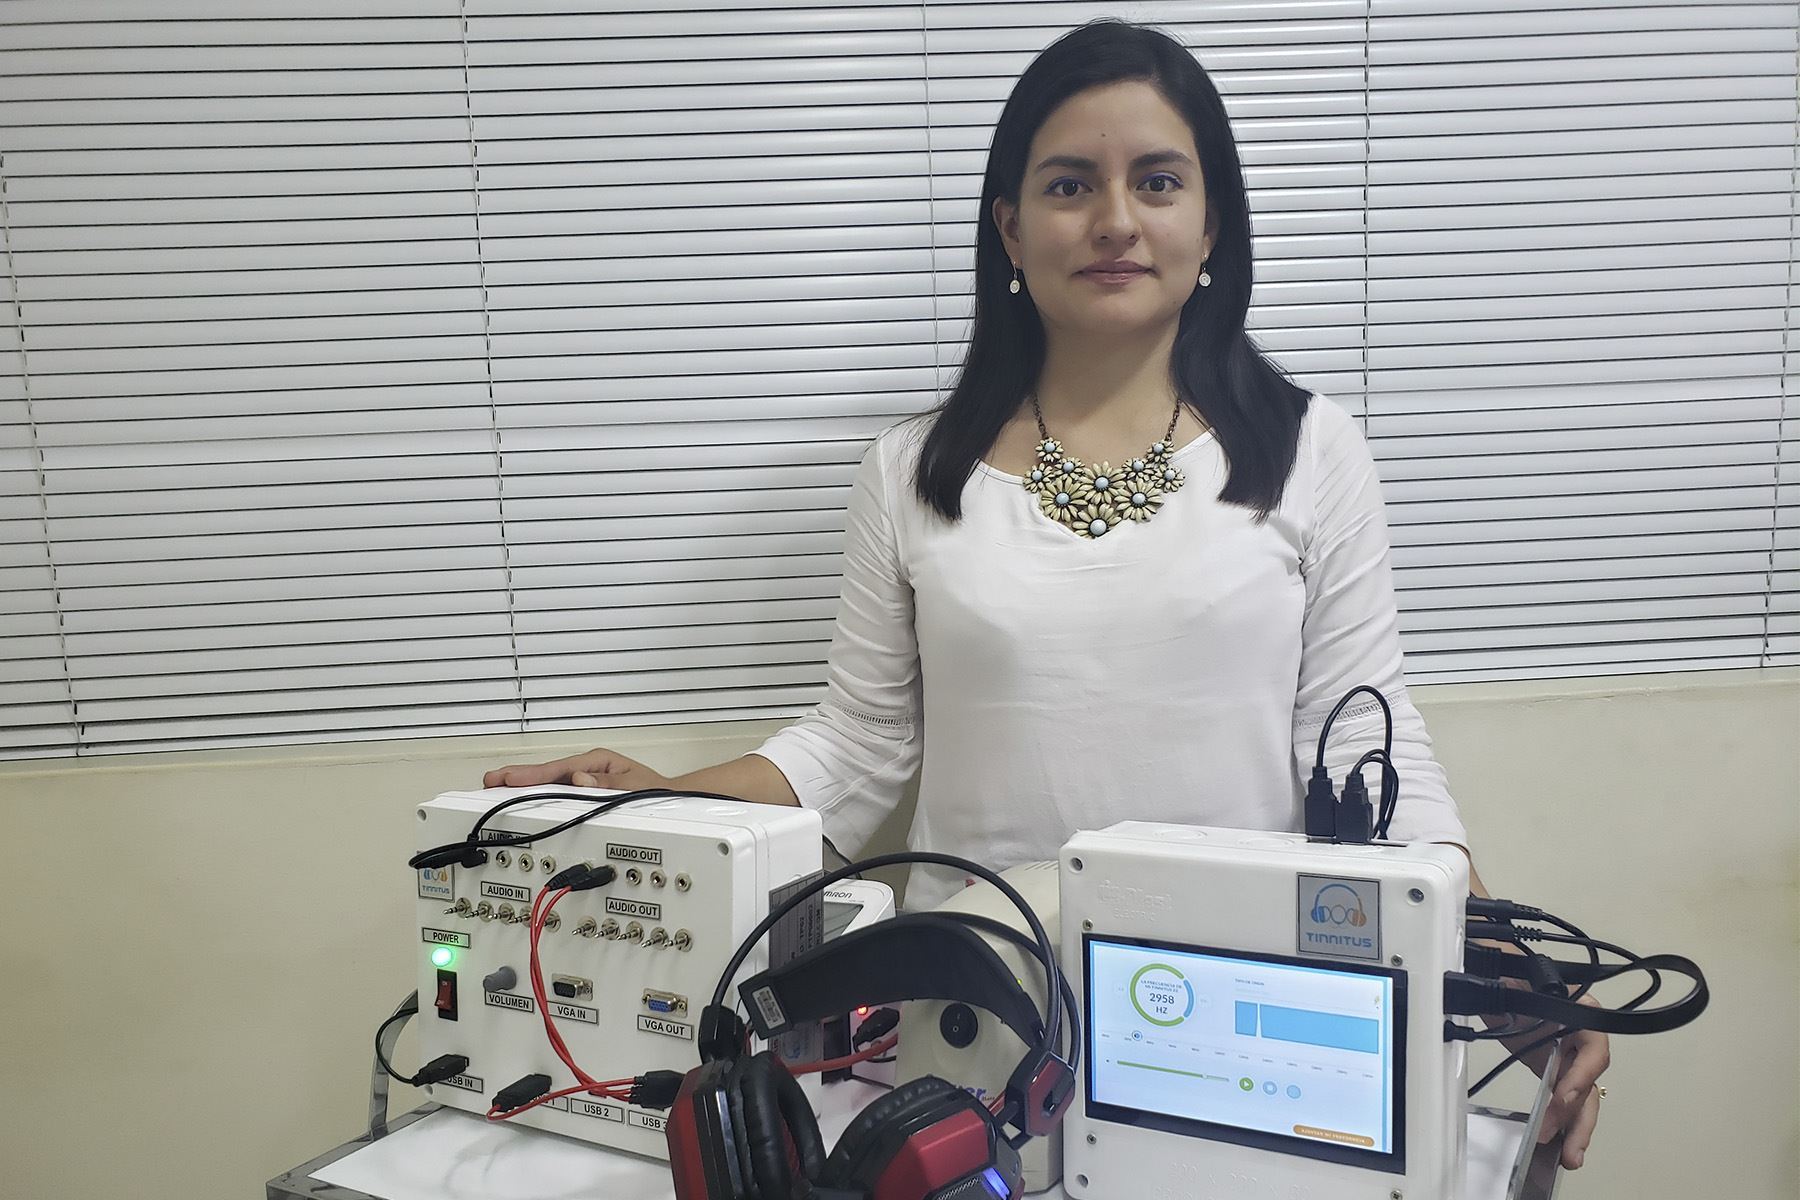 La tecnología de Tinnitus Perú permite reducir en un 80% los zumbidos que afectan a los pacientes que padecen esta patología. Esta startup se ubica entre las más innovadoras de Latinoamérica.